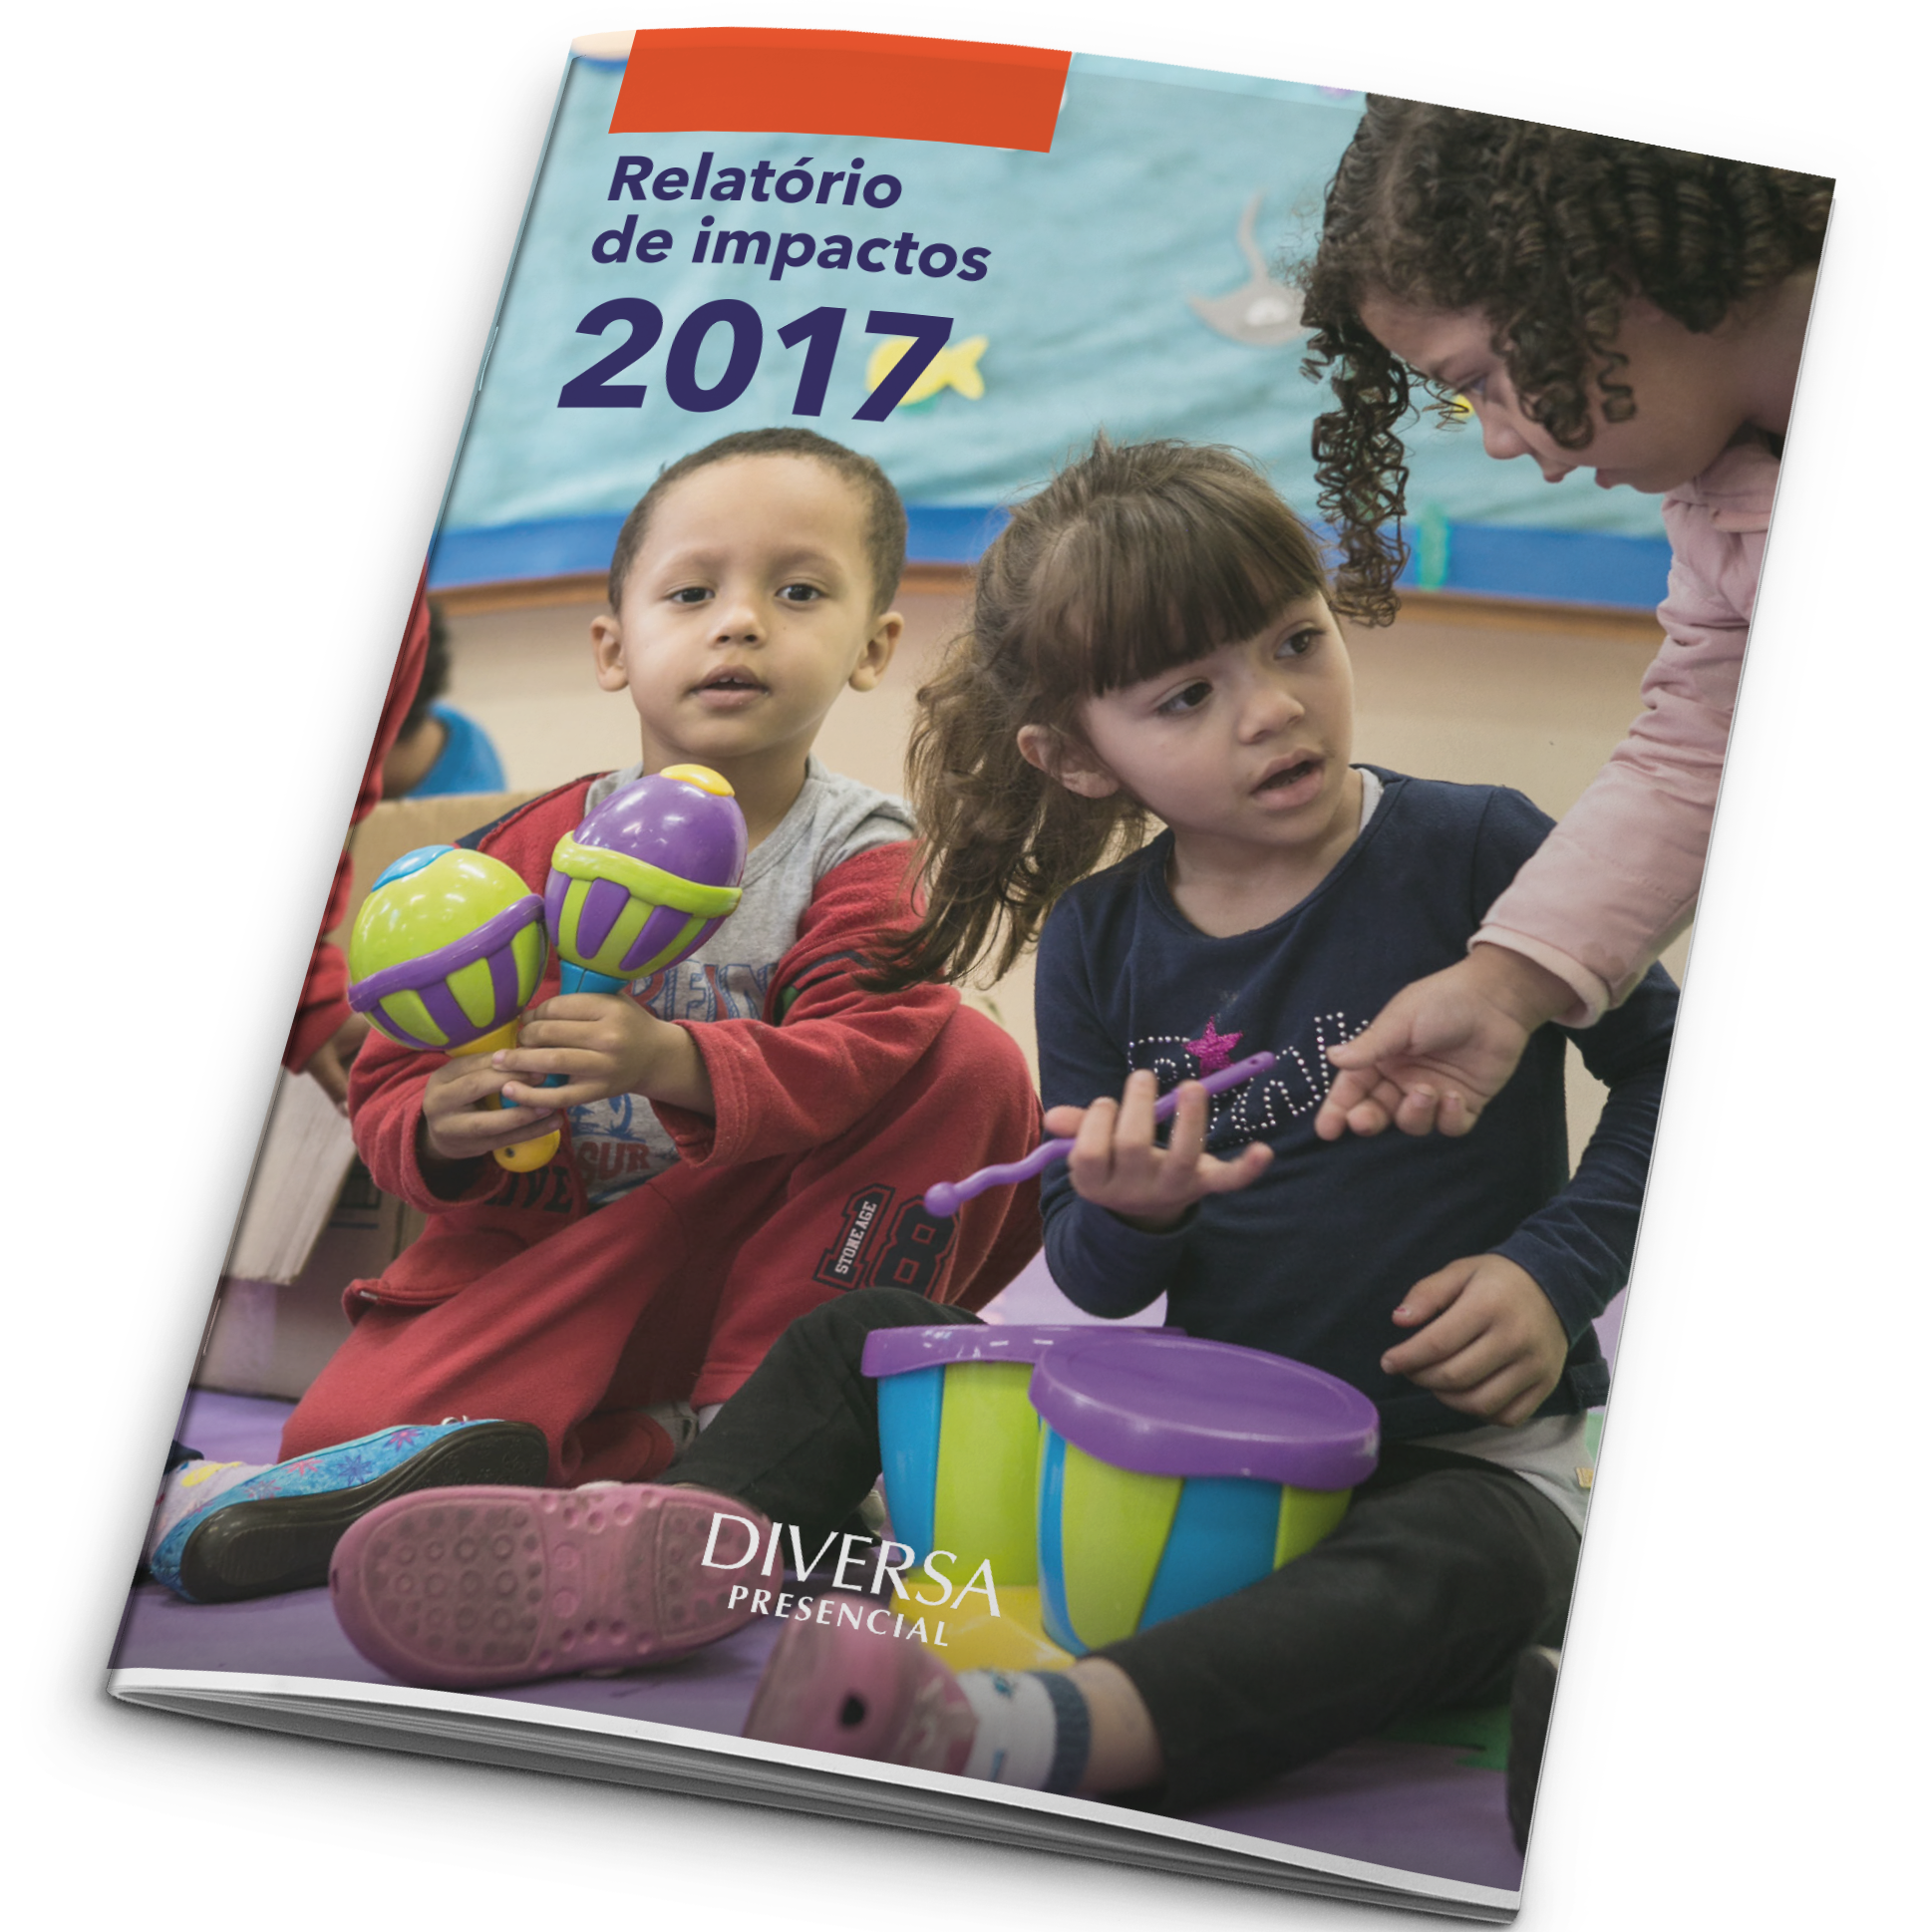 2017 - Relatório de impactos DIVERSA Presencial